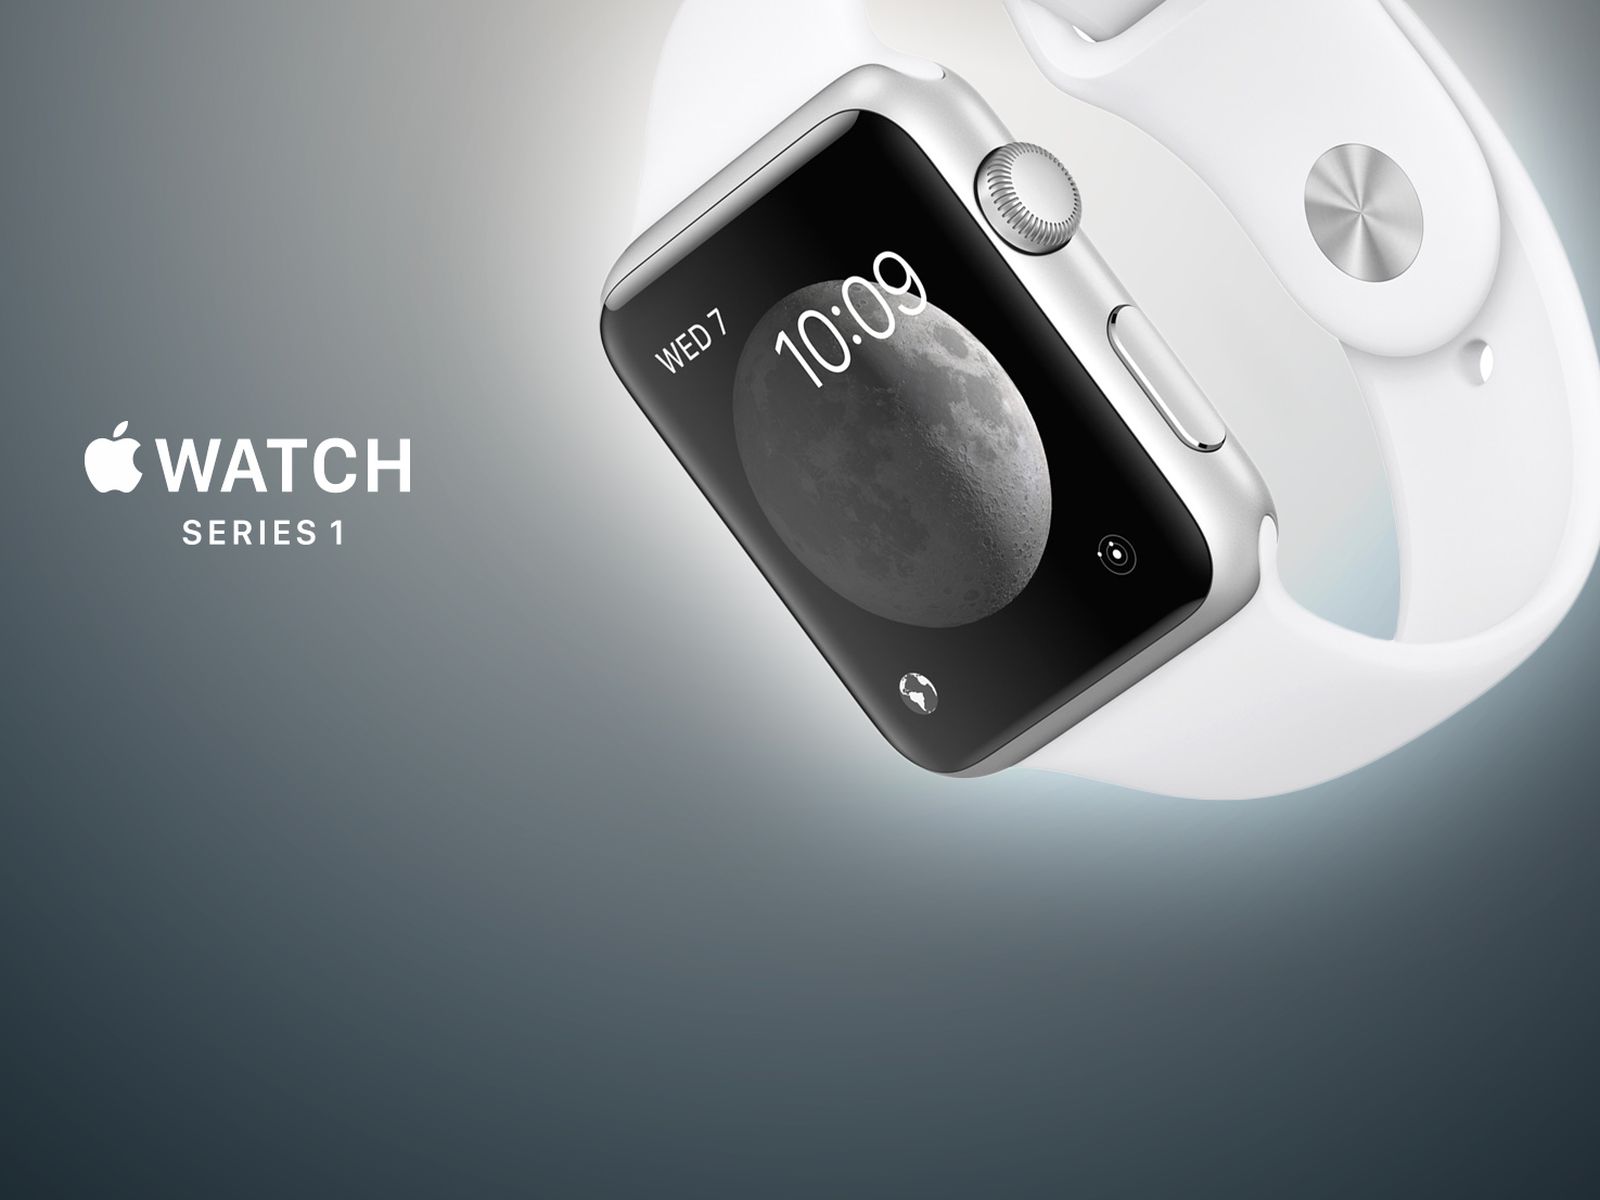 Die Apple Watch Series 1 Smartwatch ist ein weiteres klassisches Apple Produkt